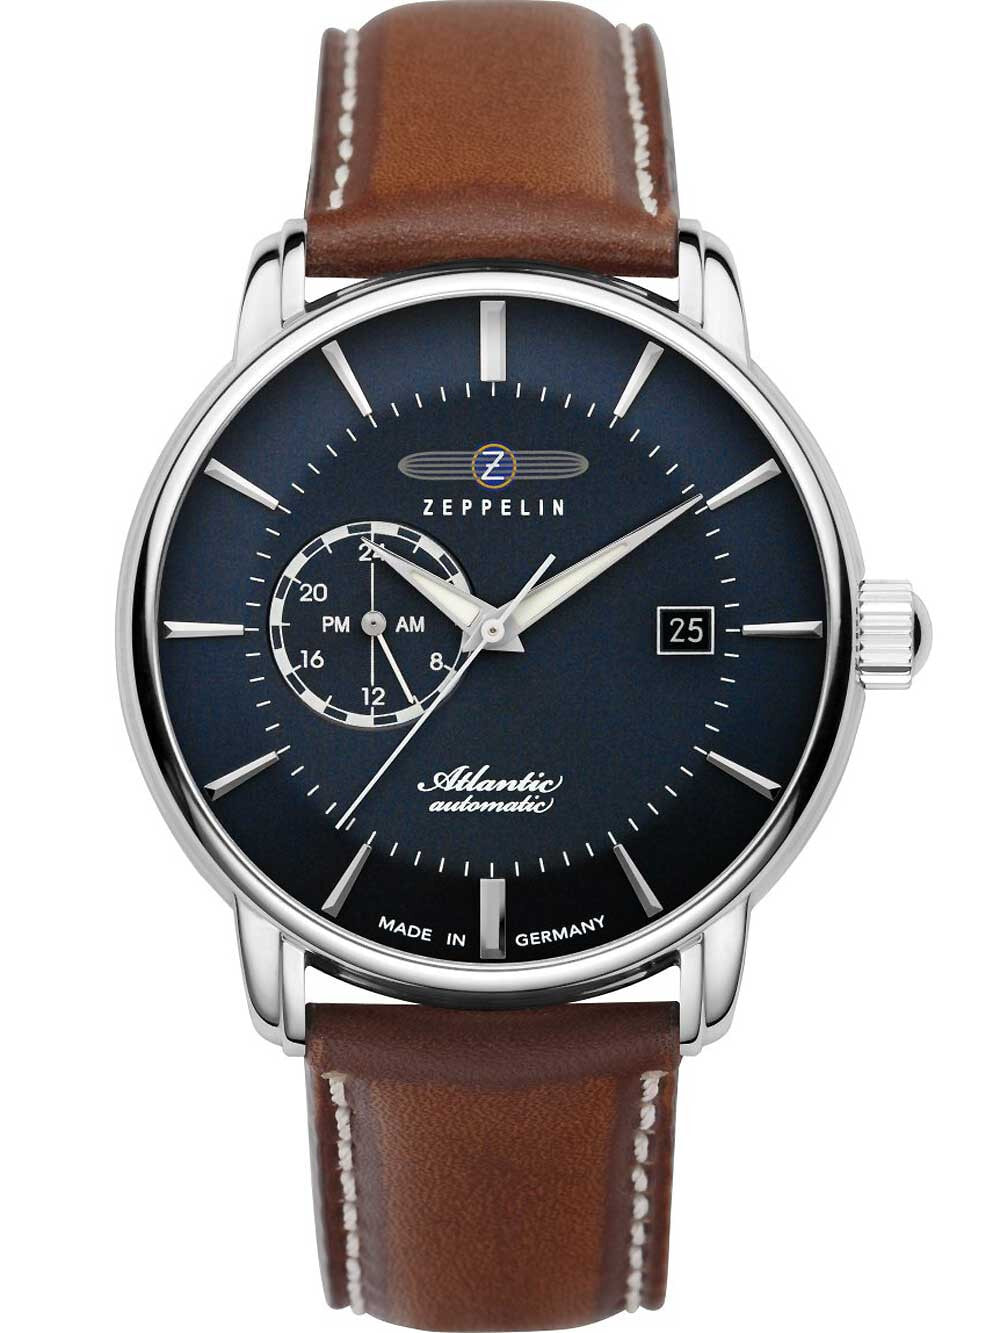 Мужские наручные  часы с коричневым кожаным ремешком Zeppelin 8470-3 Atlantic automatic mens watch 41mm 5ATM